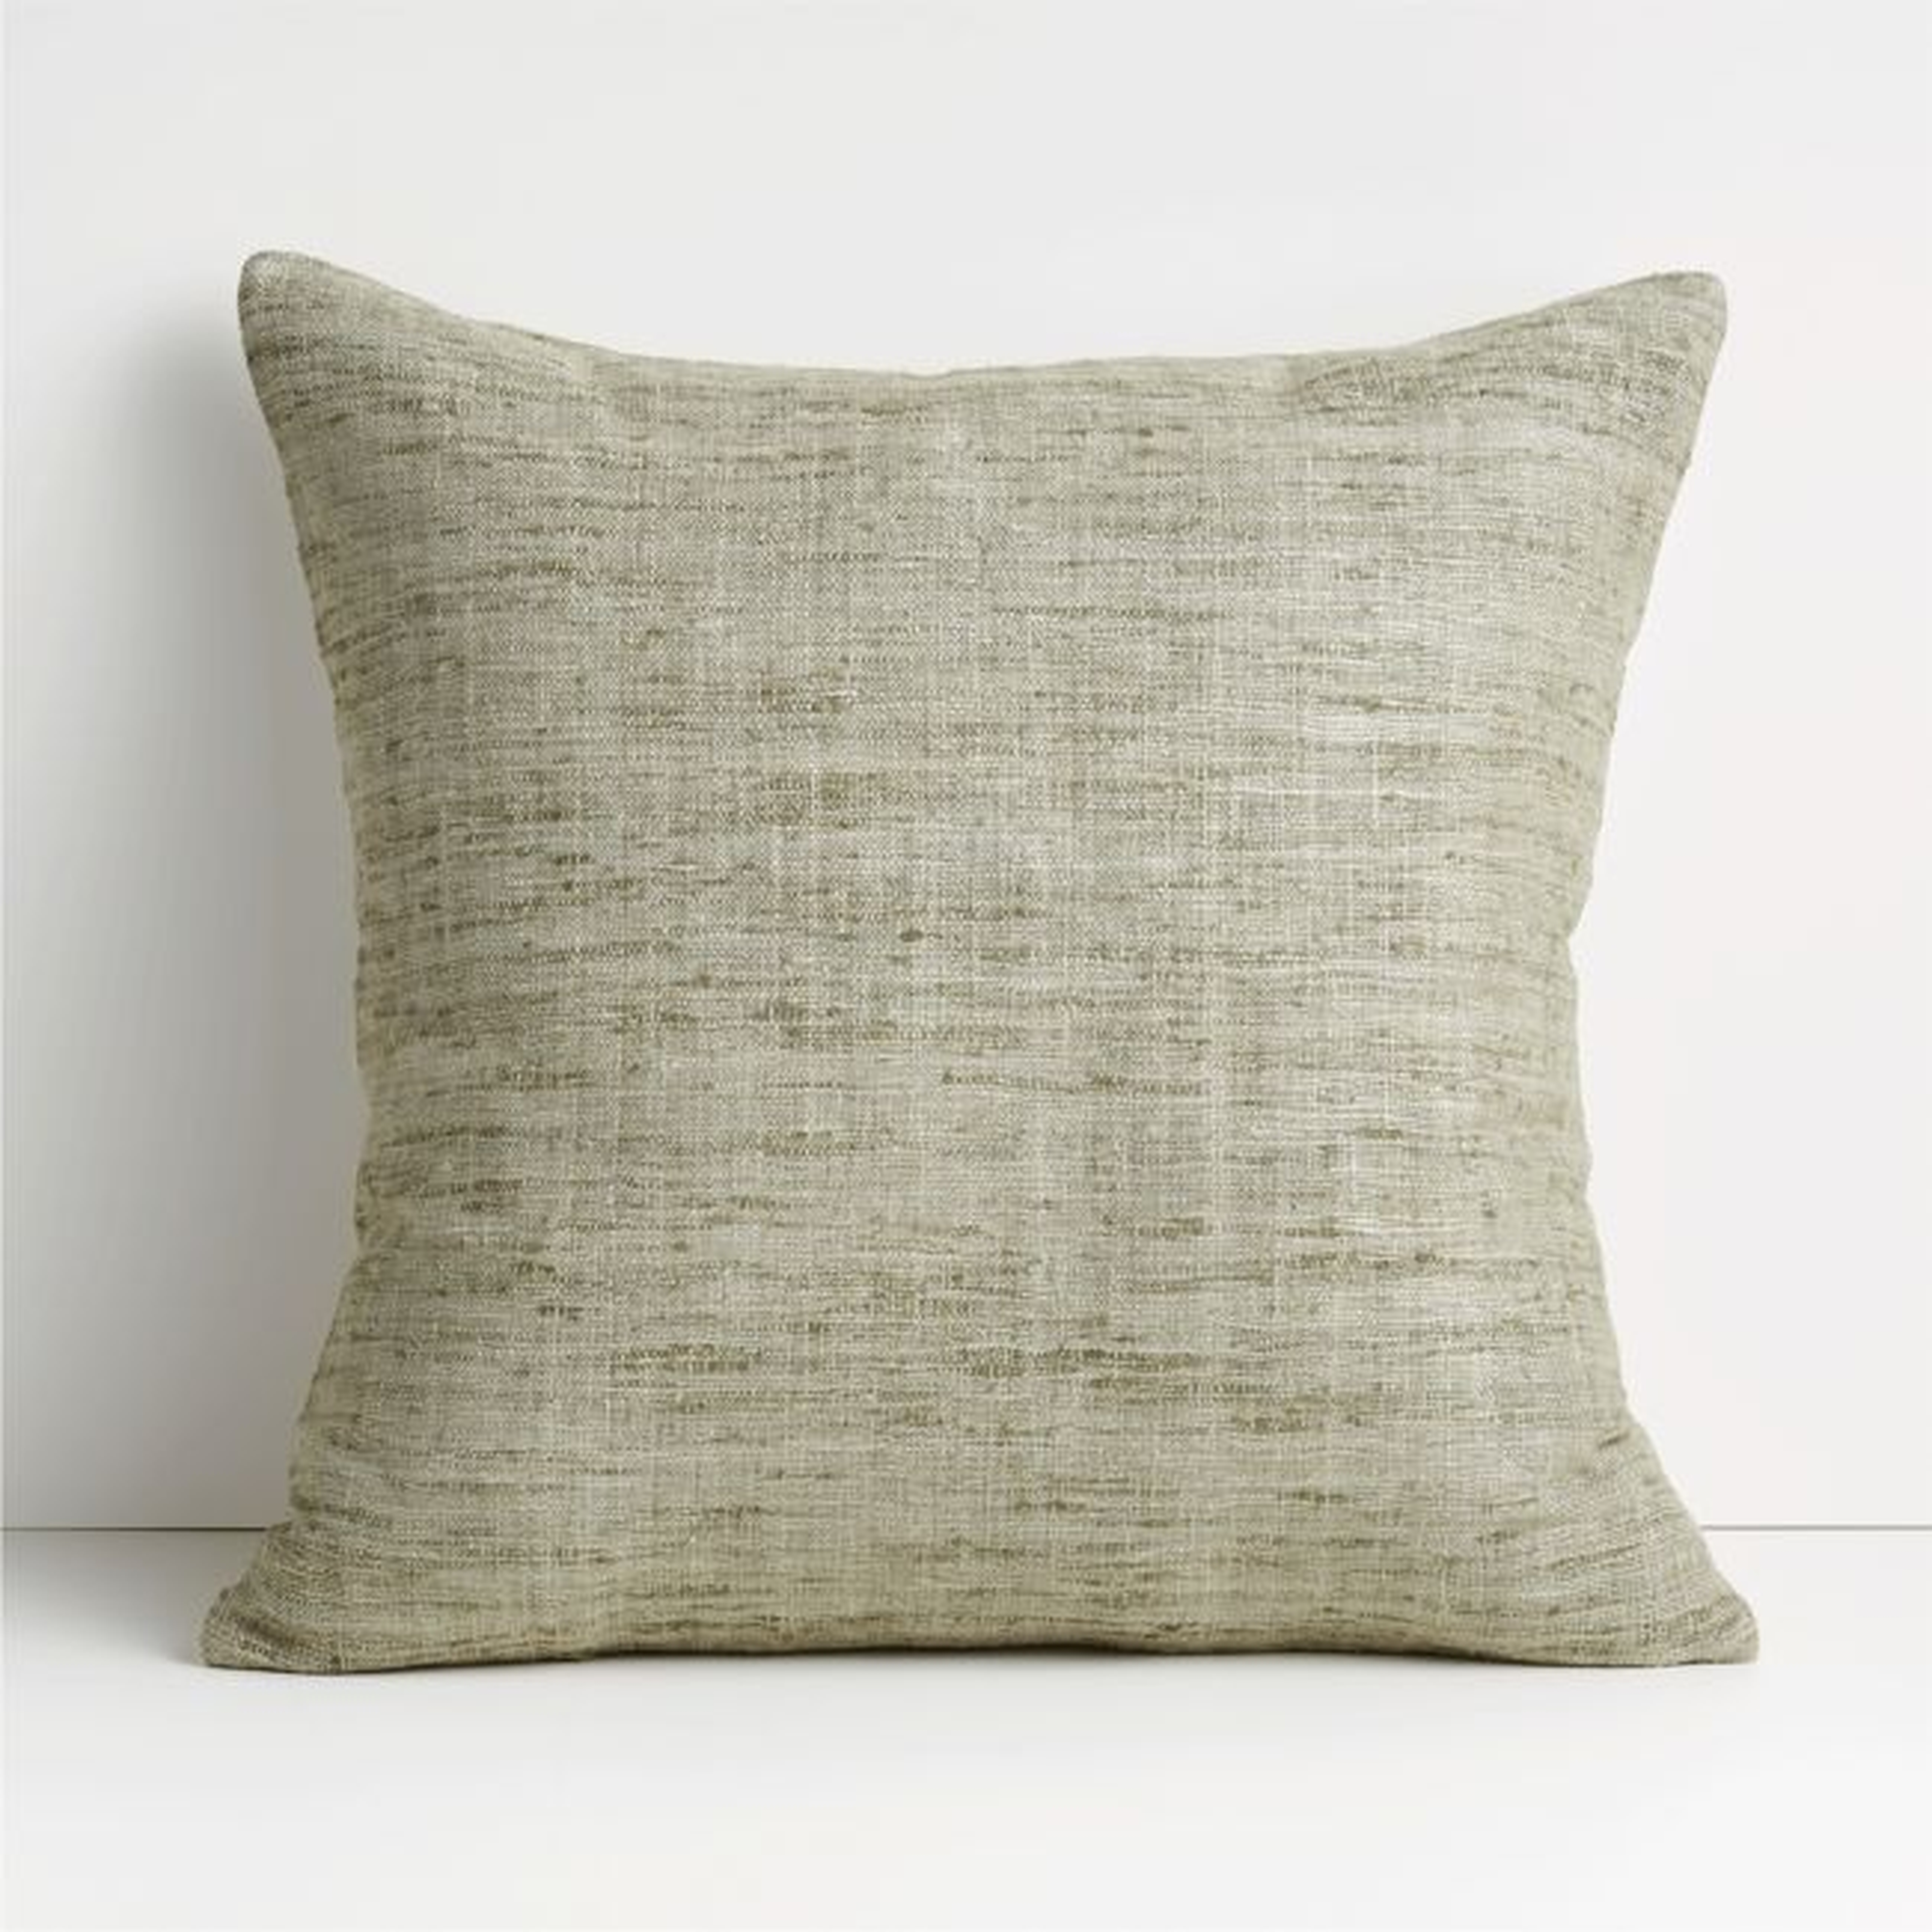 Light Grey 20"x20" Cotton Sari Silk Throw Pillow Cover - Crate and Barrel